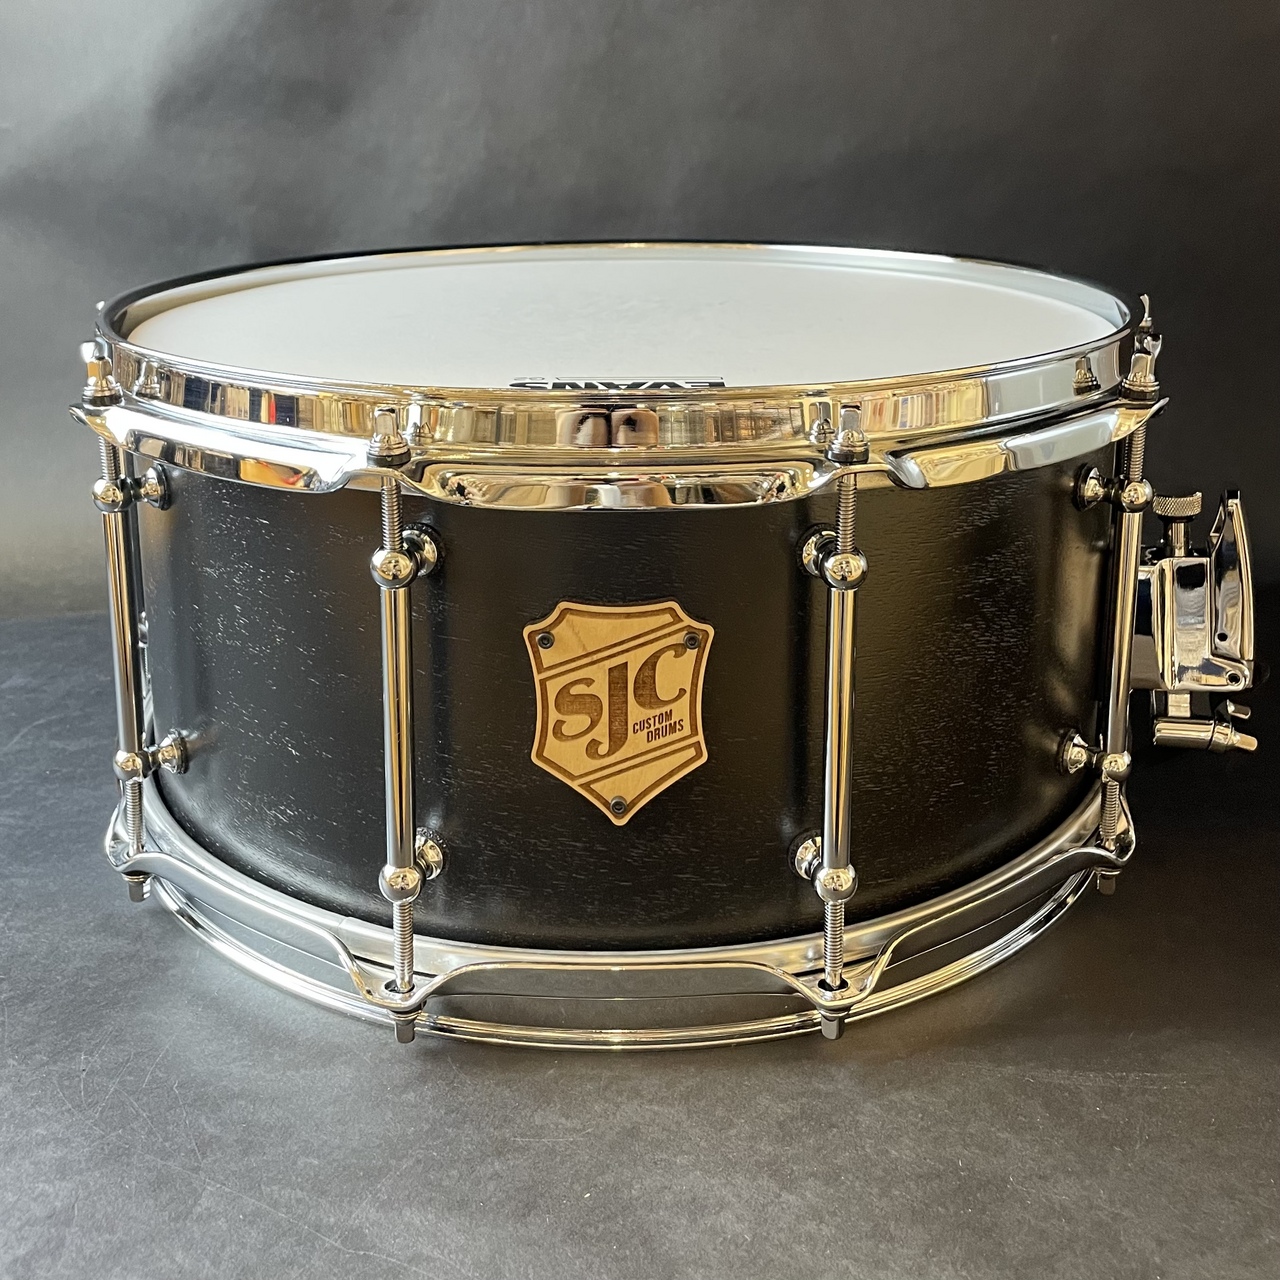 スネアドラムSJC Custom Drums Tour Series Snare Drum 14"x6.5" BLK